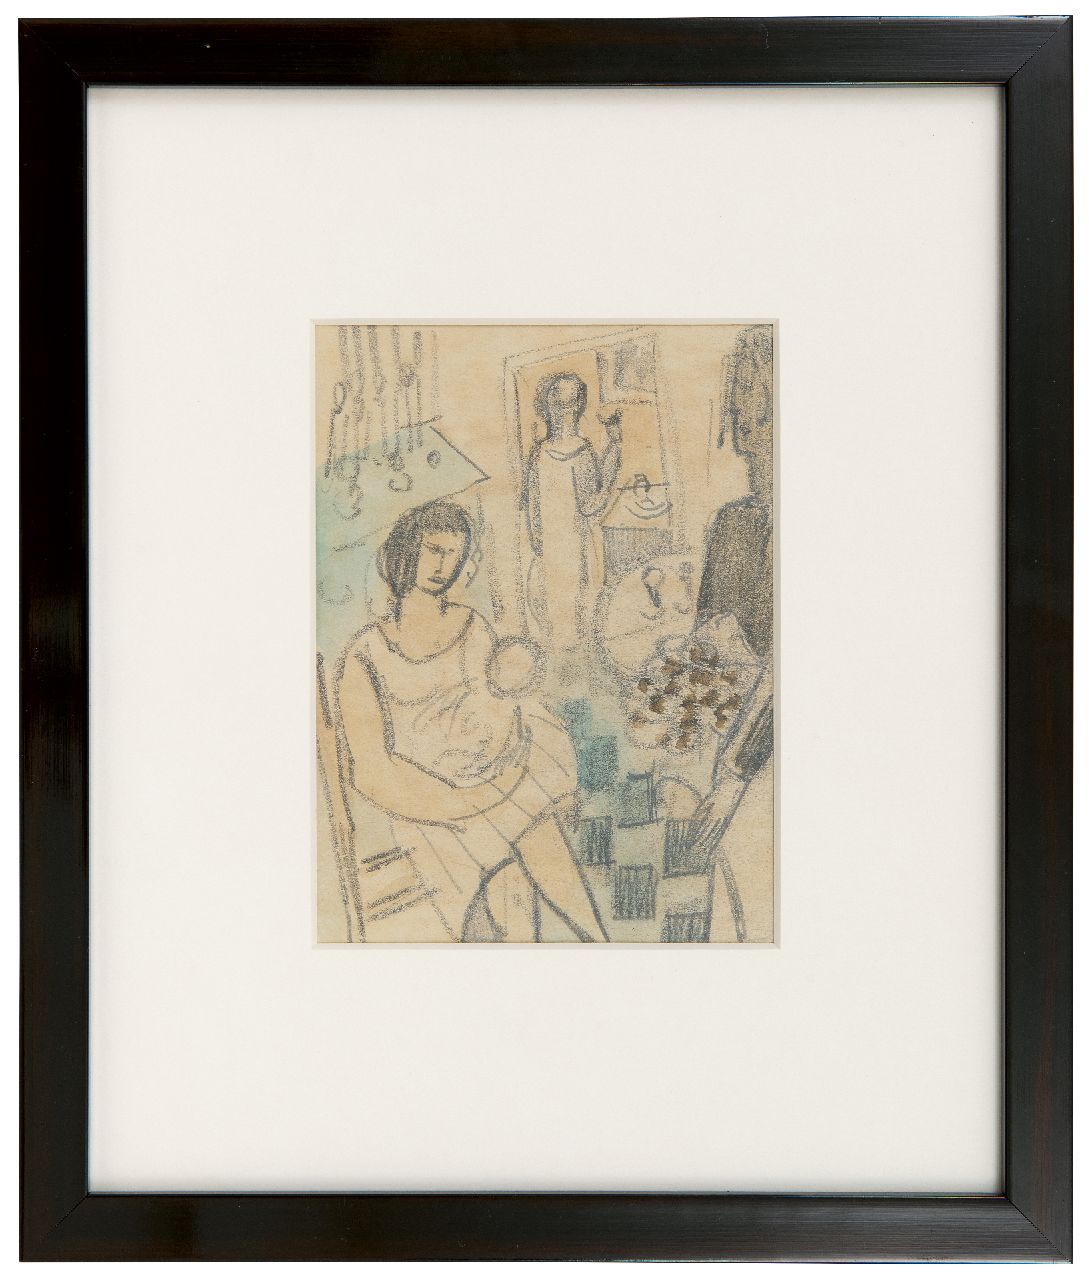 Rees O. van | Otto van Rees | Aquarellen en tekeningen te koop aangeboden | Interieur met figuren, potlood, krijt en aquarel op papier 15,0 x 11,0 cm, te dateren 1926